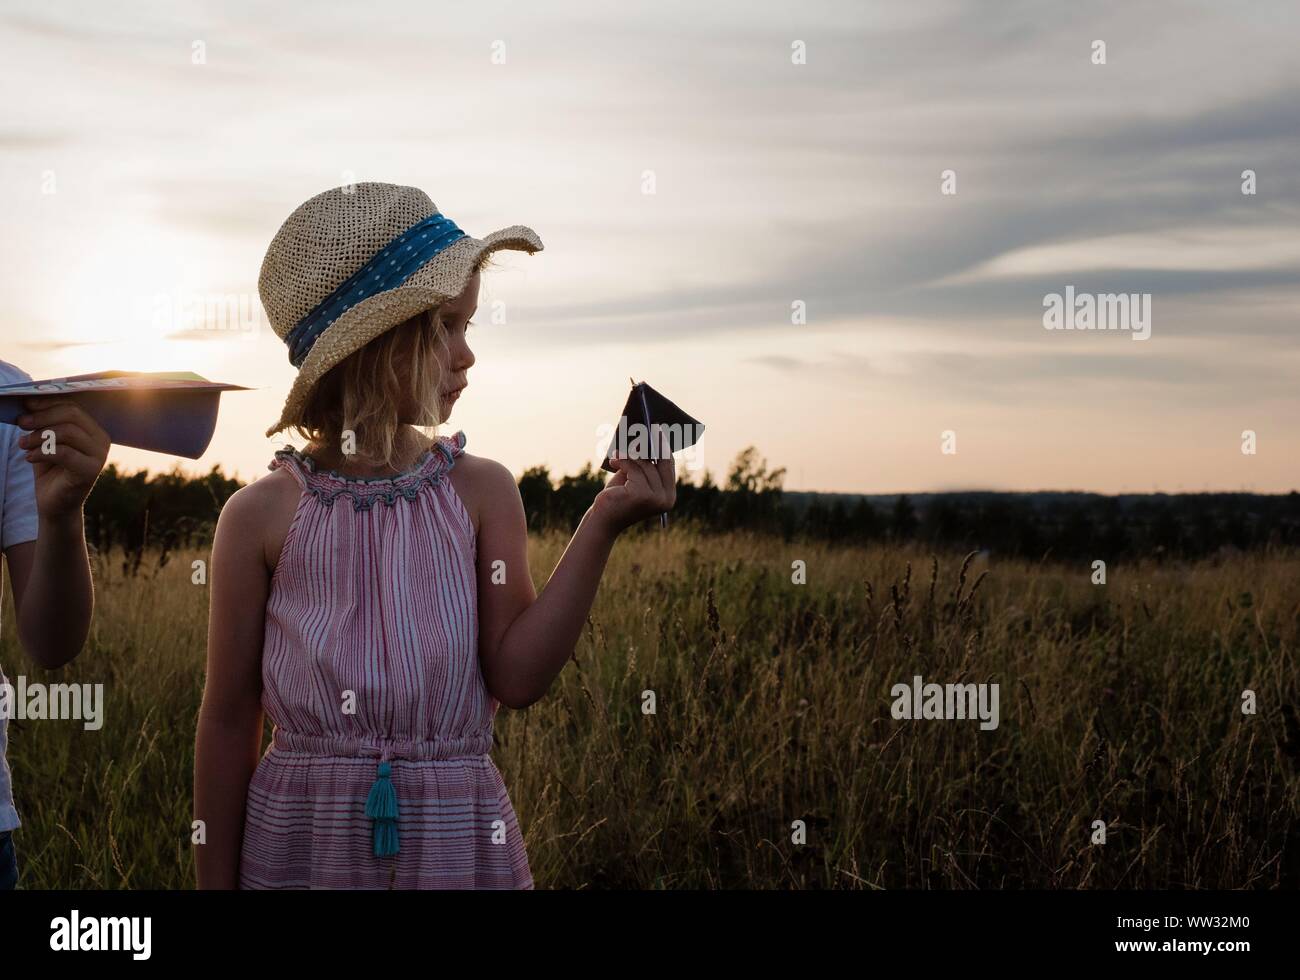 Profil d'une jeune fille tenant un avion en papier dans un pré au coucher du soleil Banque D'Images